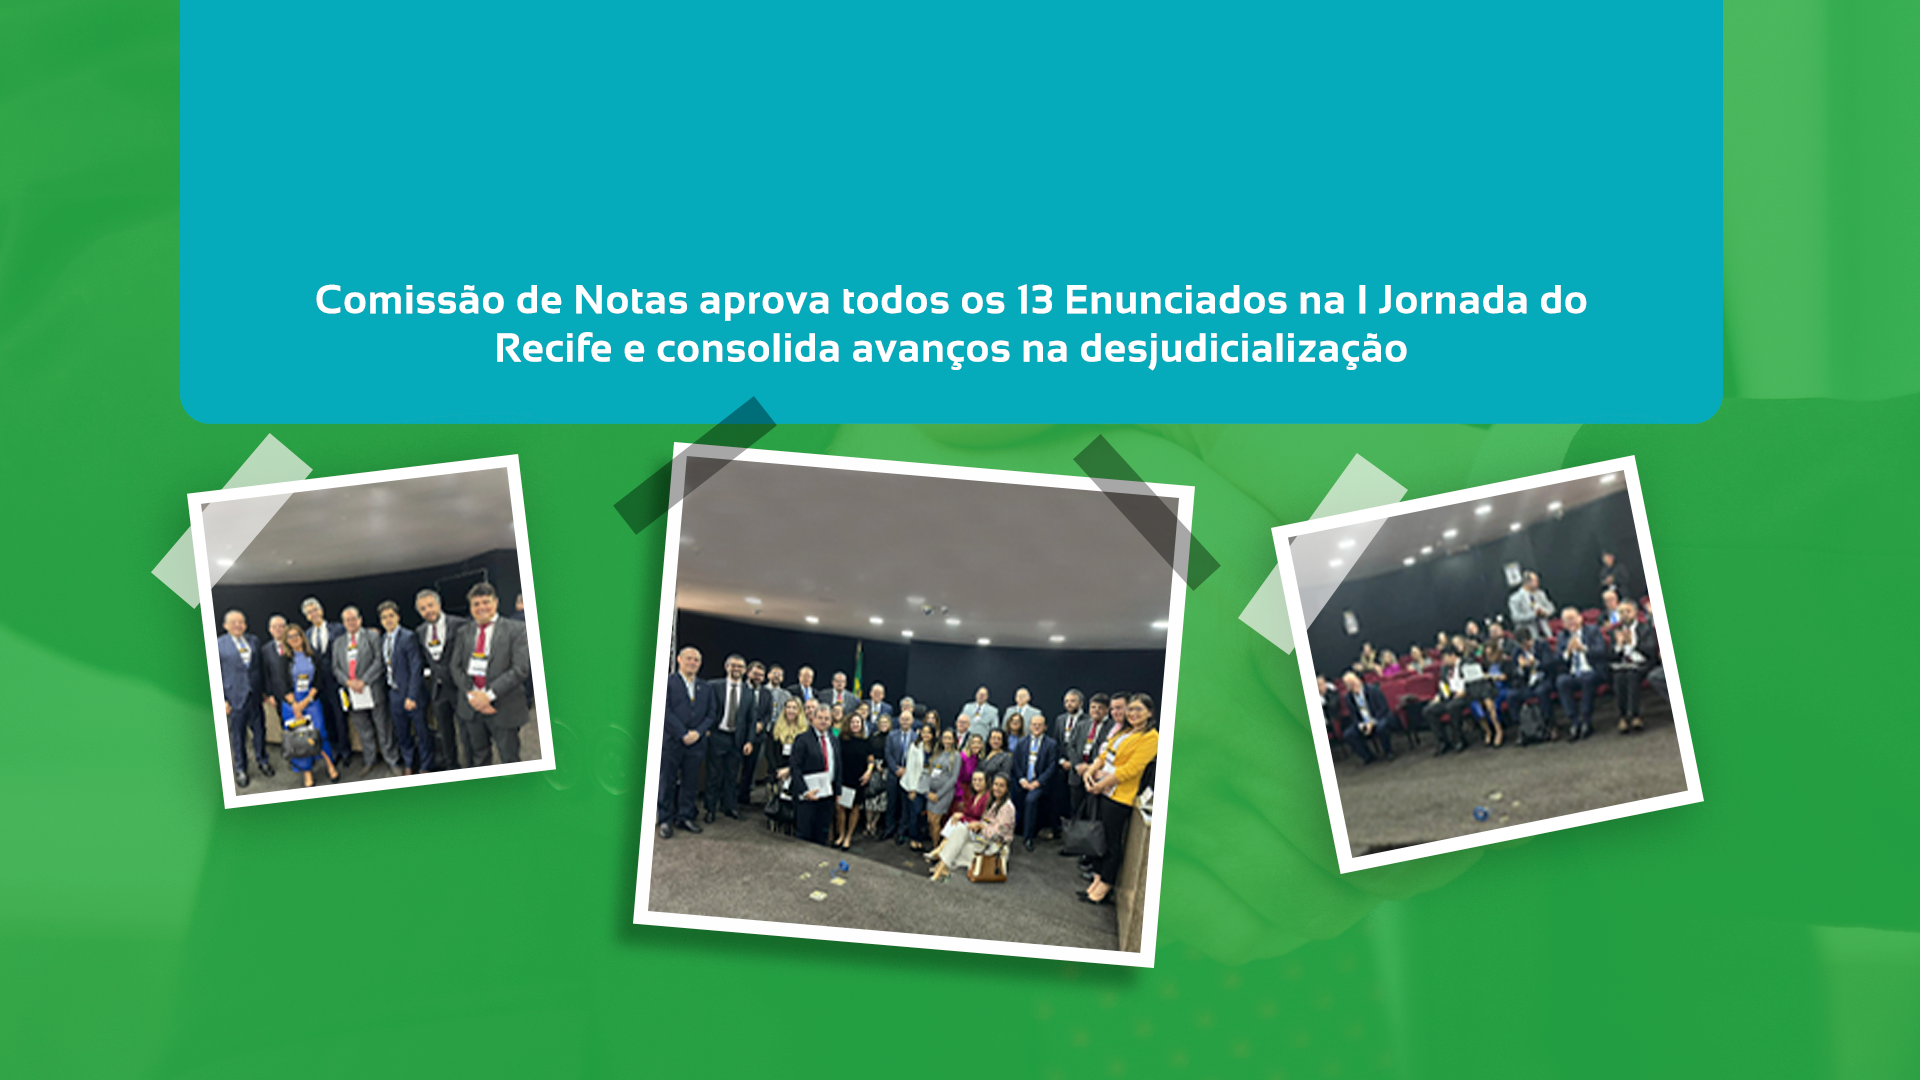 Comissão De Notas Aprova 13 Enunciados Na I Jornada Do Recife E Consolida Avanços Na Desjudicialização